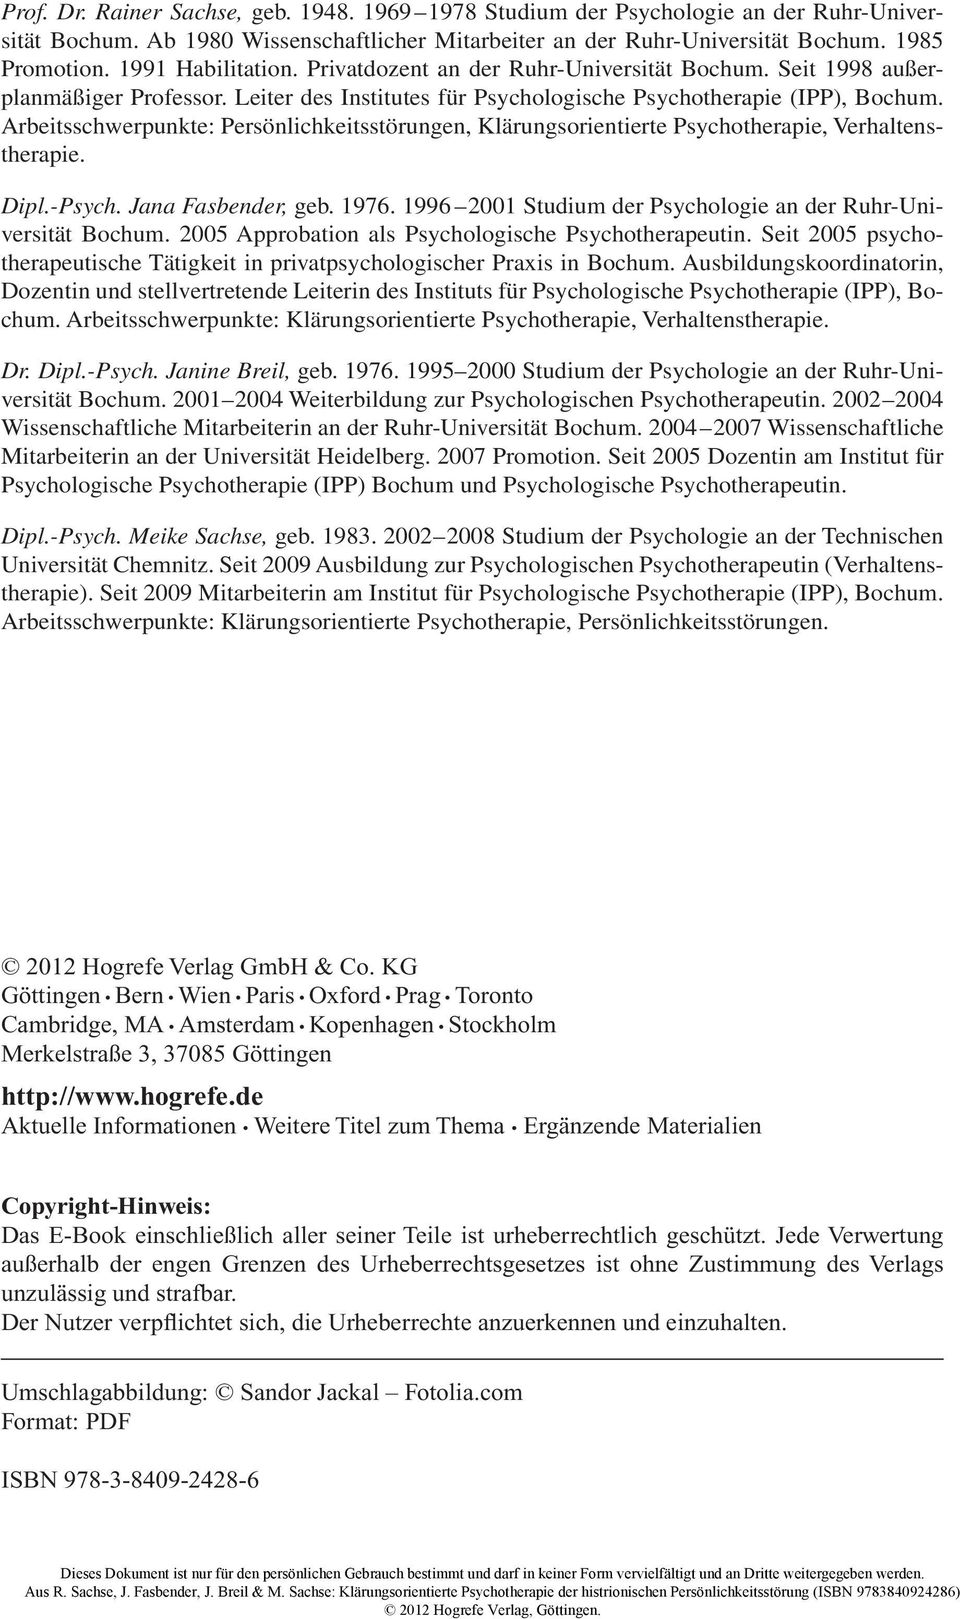 Arbeitsschwerpunkte: Persönlichkeitsstörungen, Klärungsorientierte Psychotherapie, Verhaltenstherapie. Dipl.-Psych. Jana Fasbender, geb. 1976.